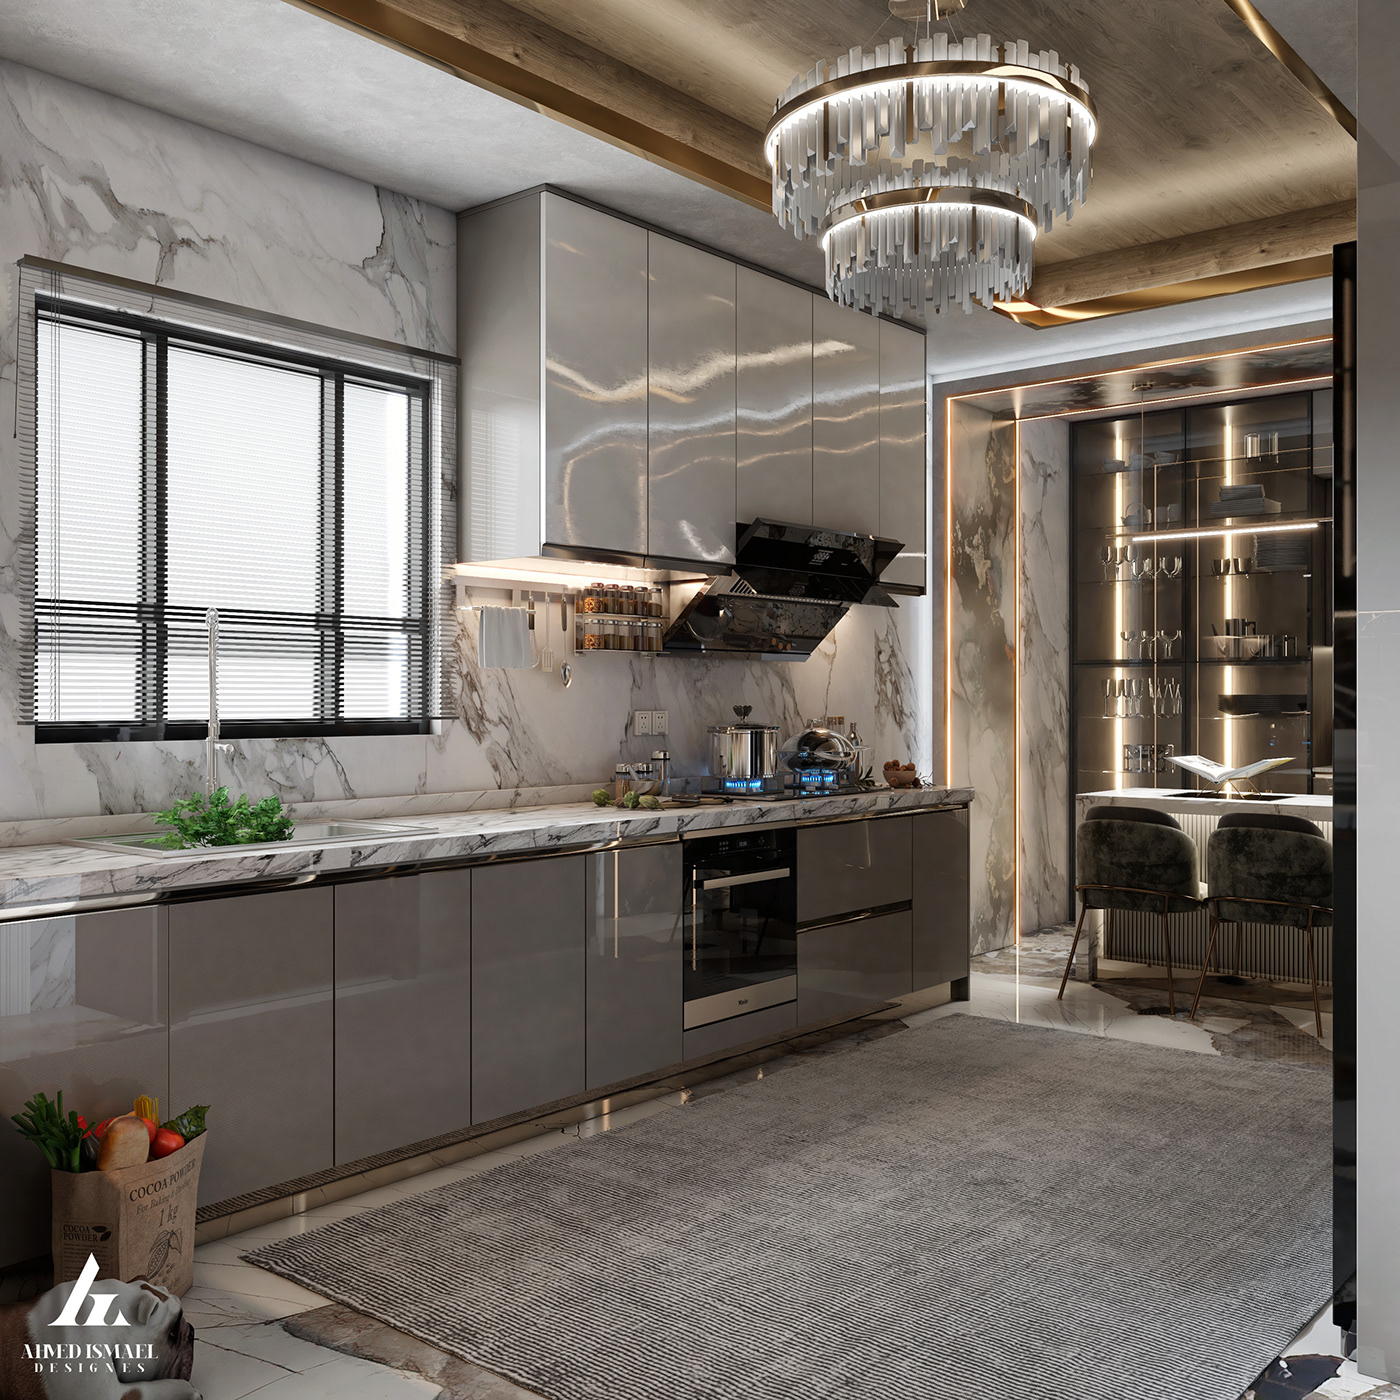 3D 3ds max architecture design interior design  kitchen modern Render visualization vray